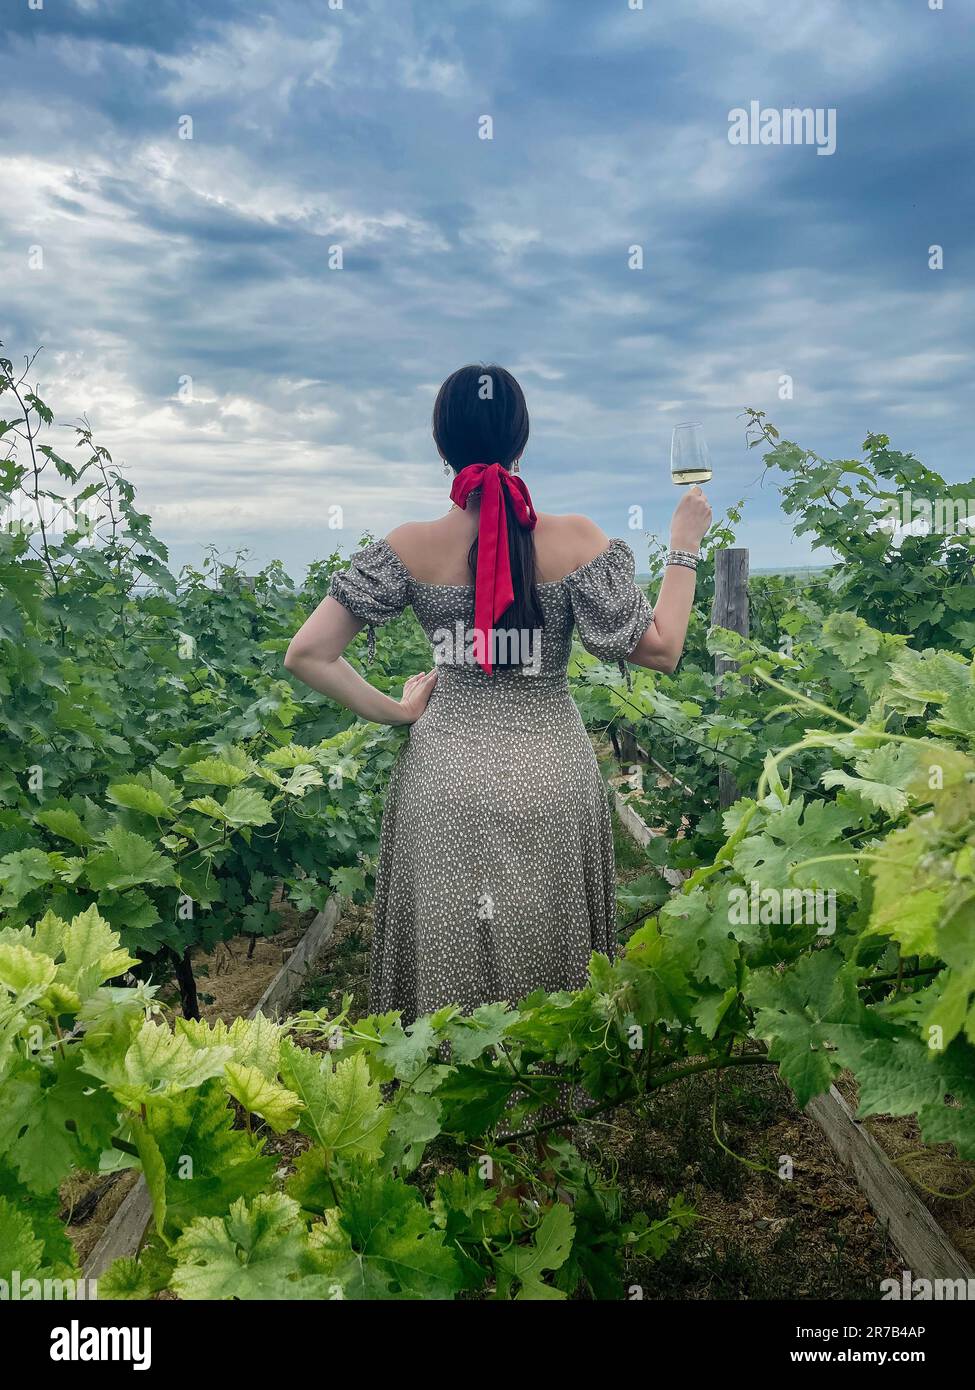 Eine junge Frau mit einer wunderschönen Figur im langen Kleid steht mit einem Glas Champagner zurück und blickt auf den Horizont im Weingut. Weibliches dickes langes Haar wird gesammelt Stockfoto